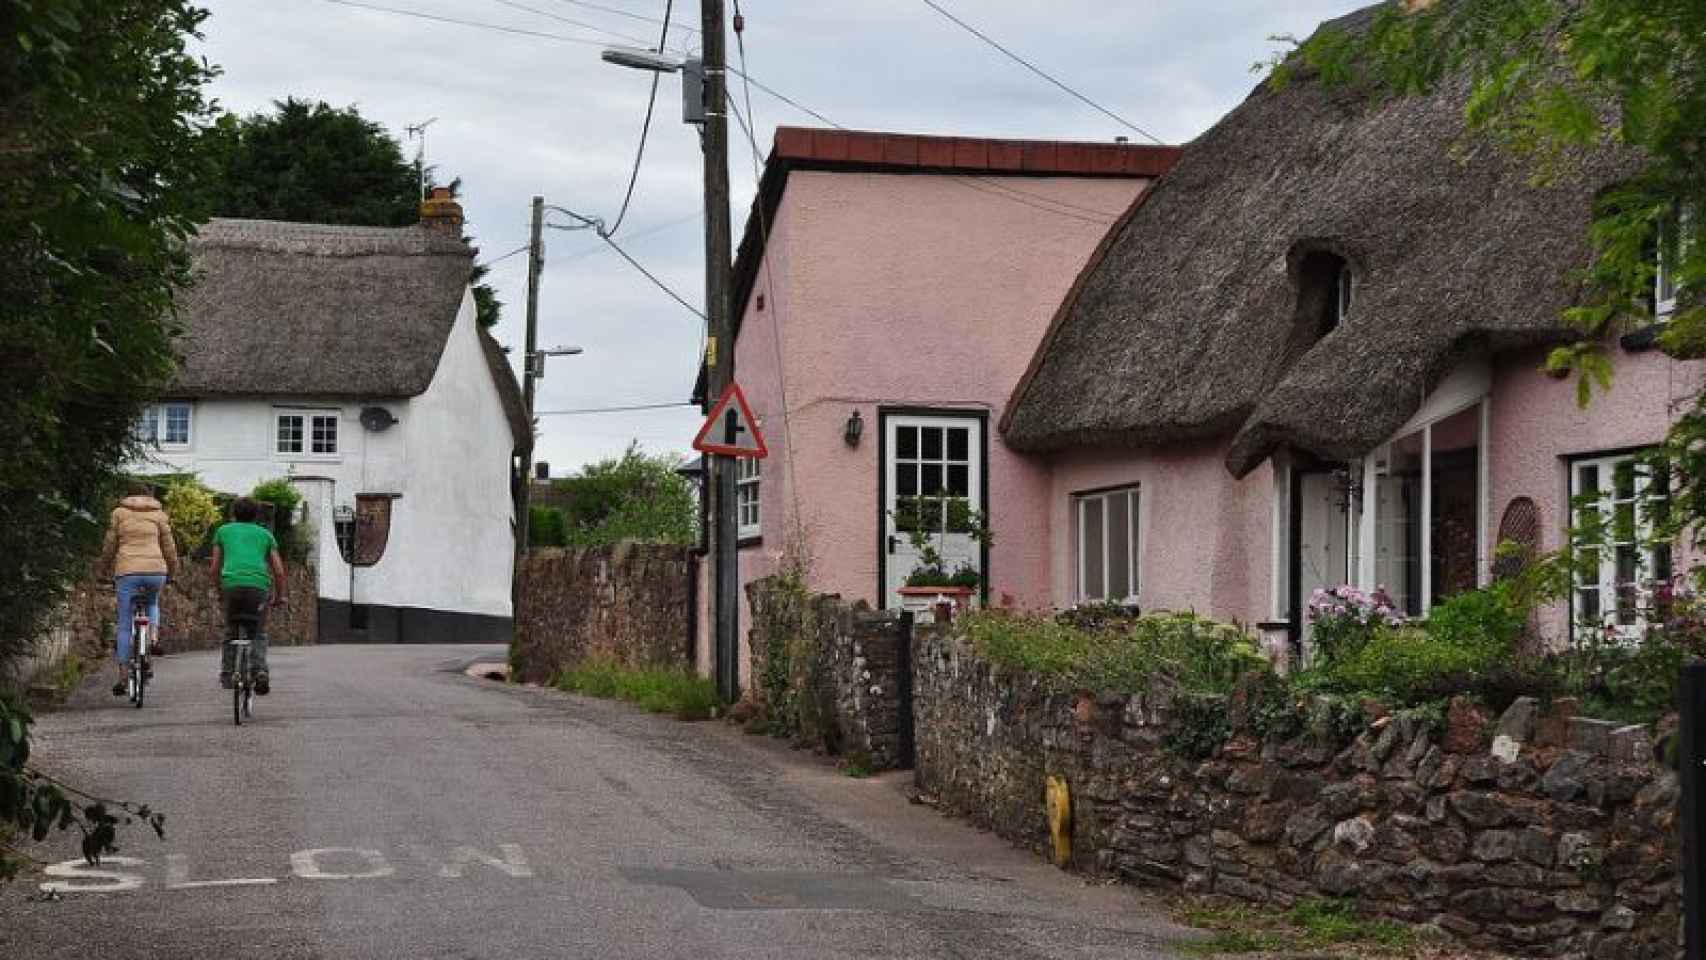 El pueblo de Willand, al sur de Inglaterra, crece 2 centímetros al año.